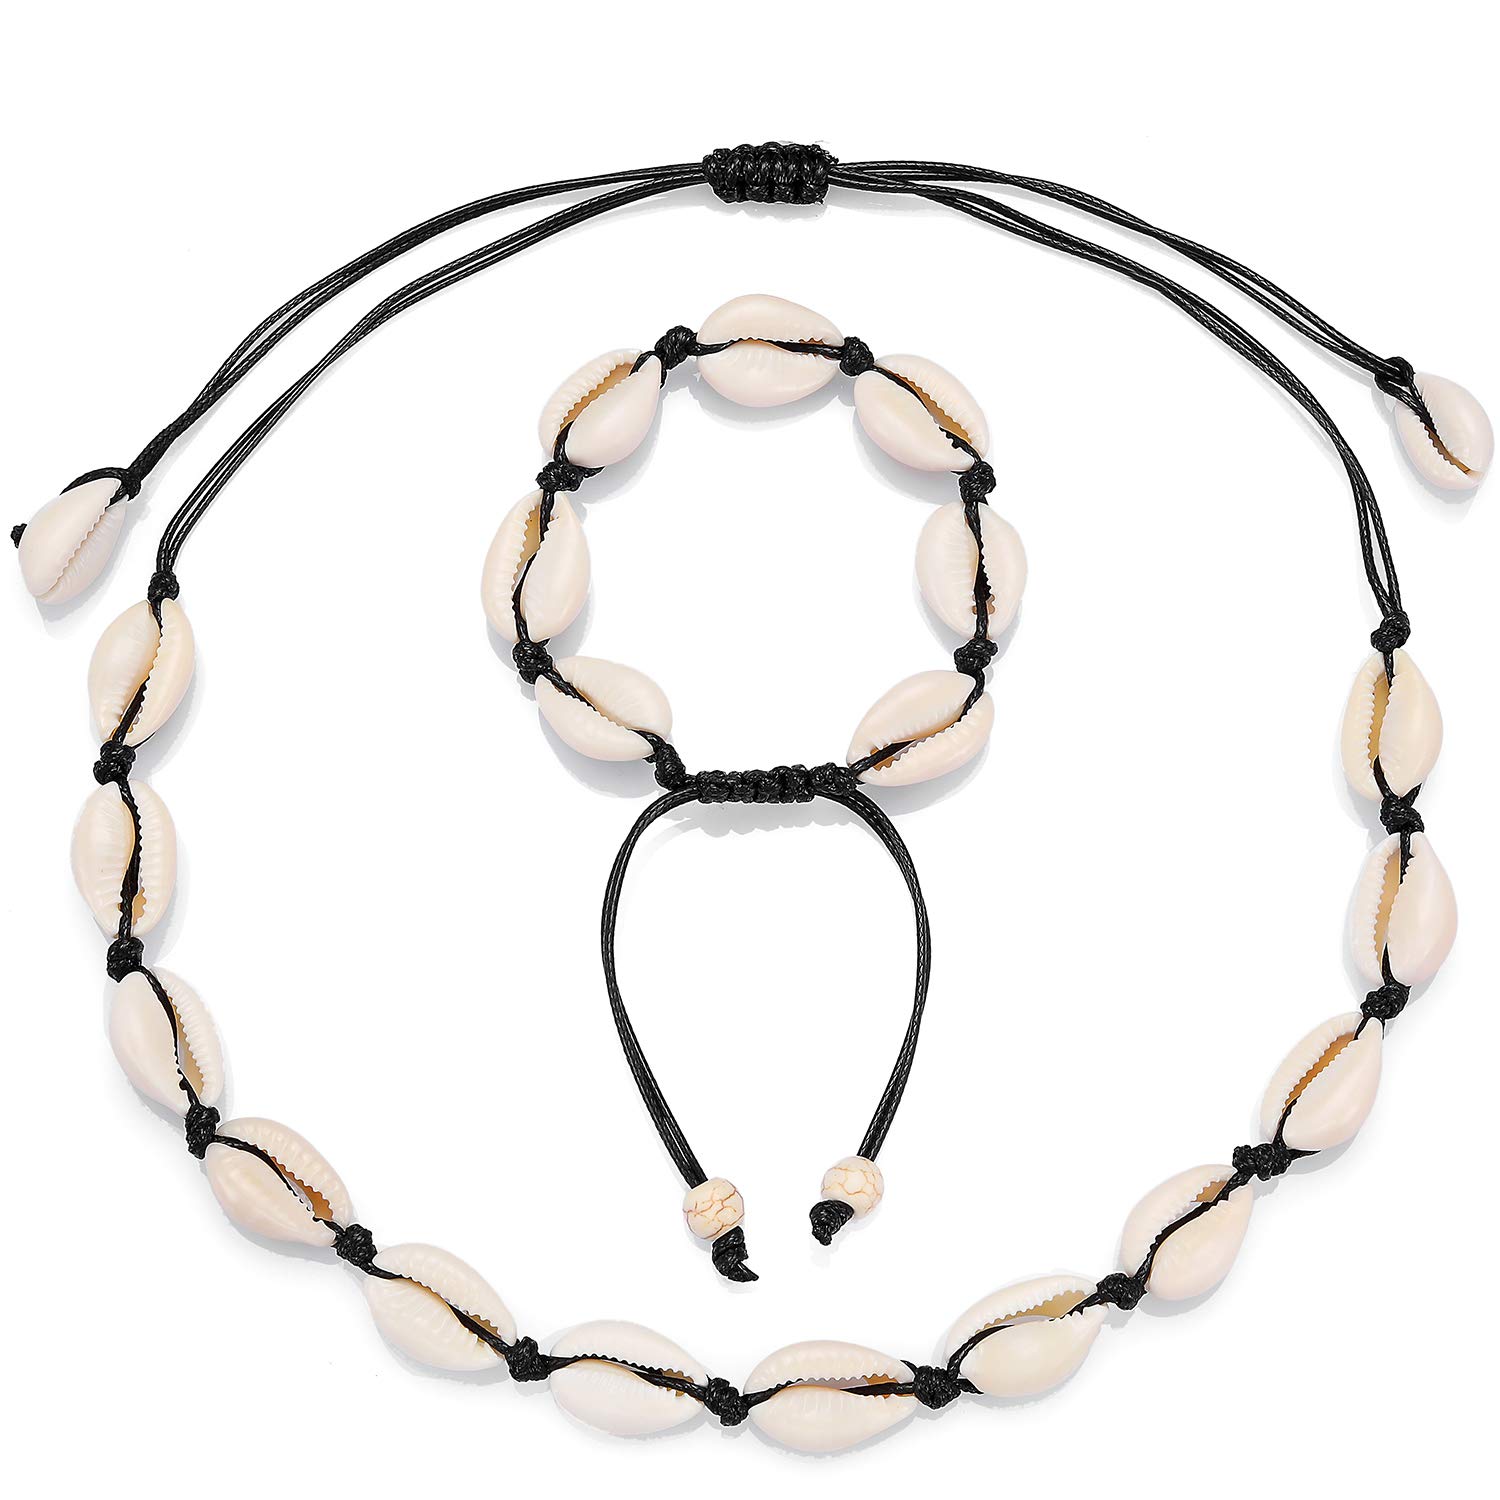 Starain 2Pcs Shell Necklace Anklet for Women Handmade Adjustable Puka Beach VSCO Girl Shell Necklace Set